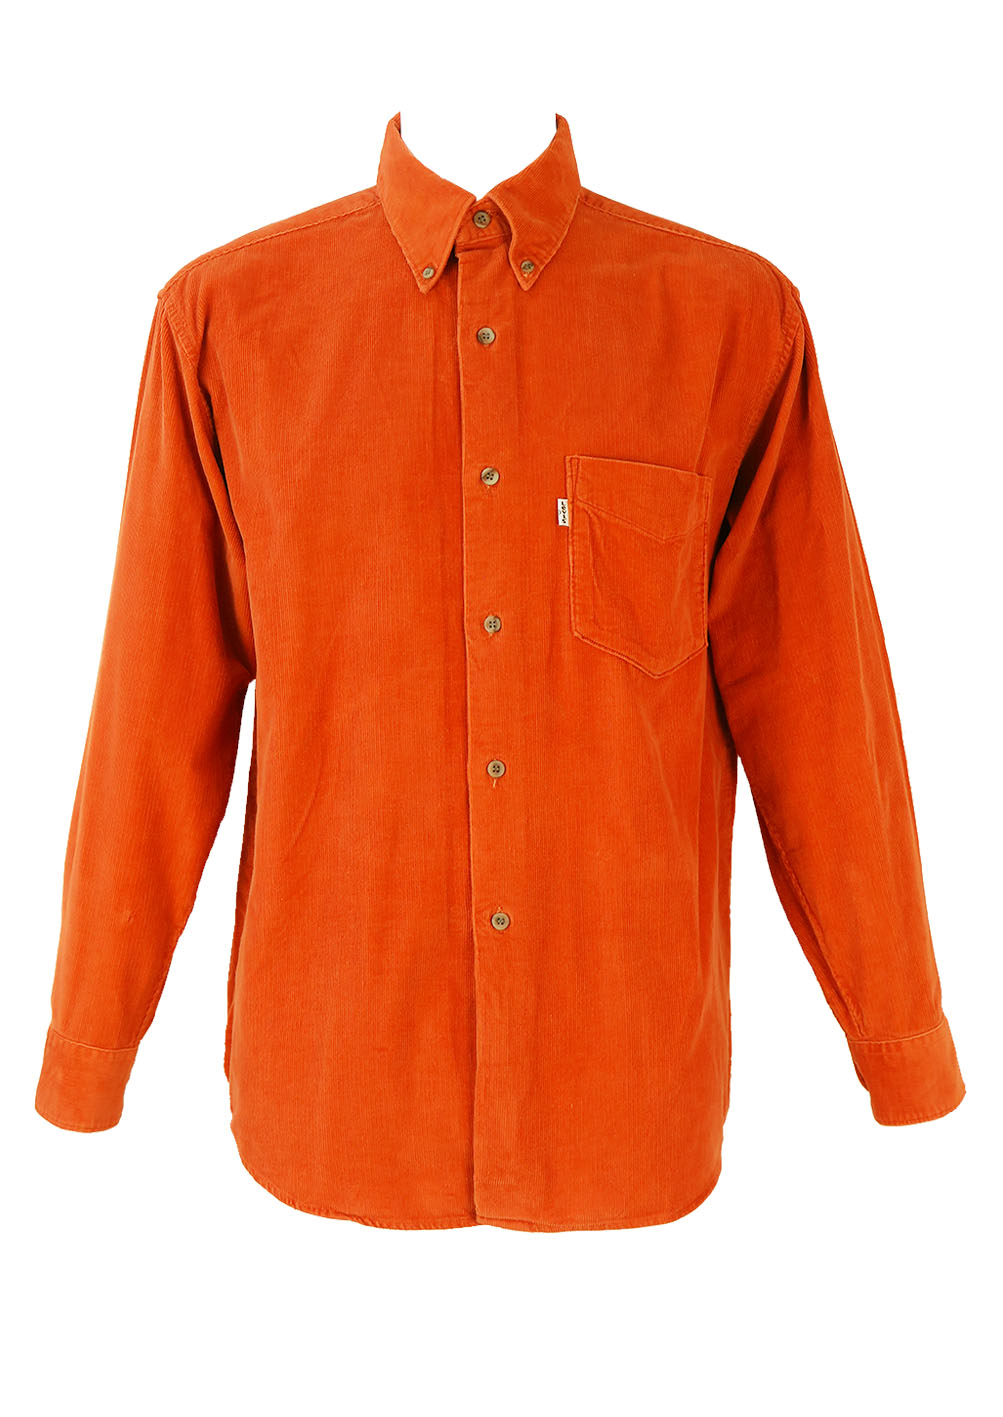 Levis Orange Corduroy Shirt - L/XL | Reign Vintage